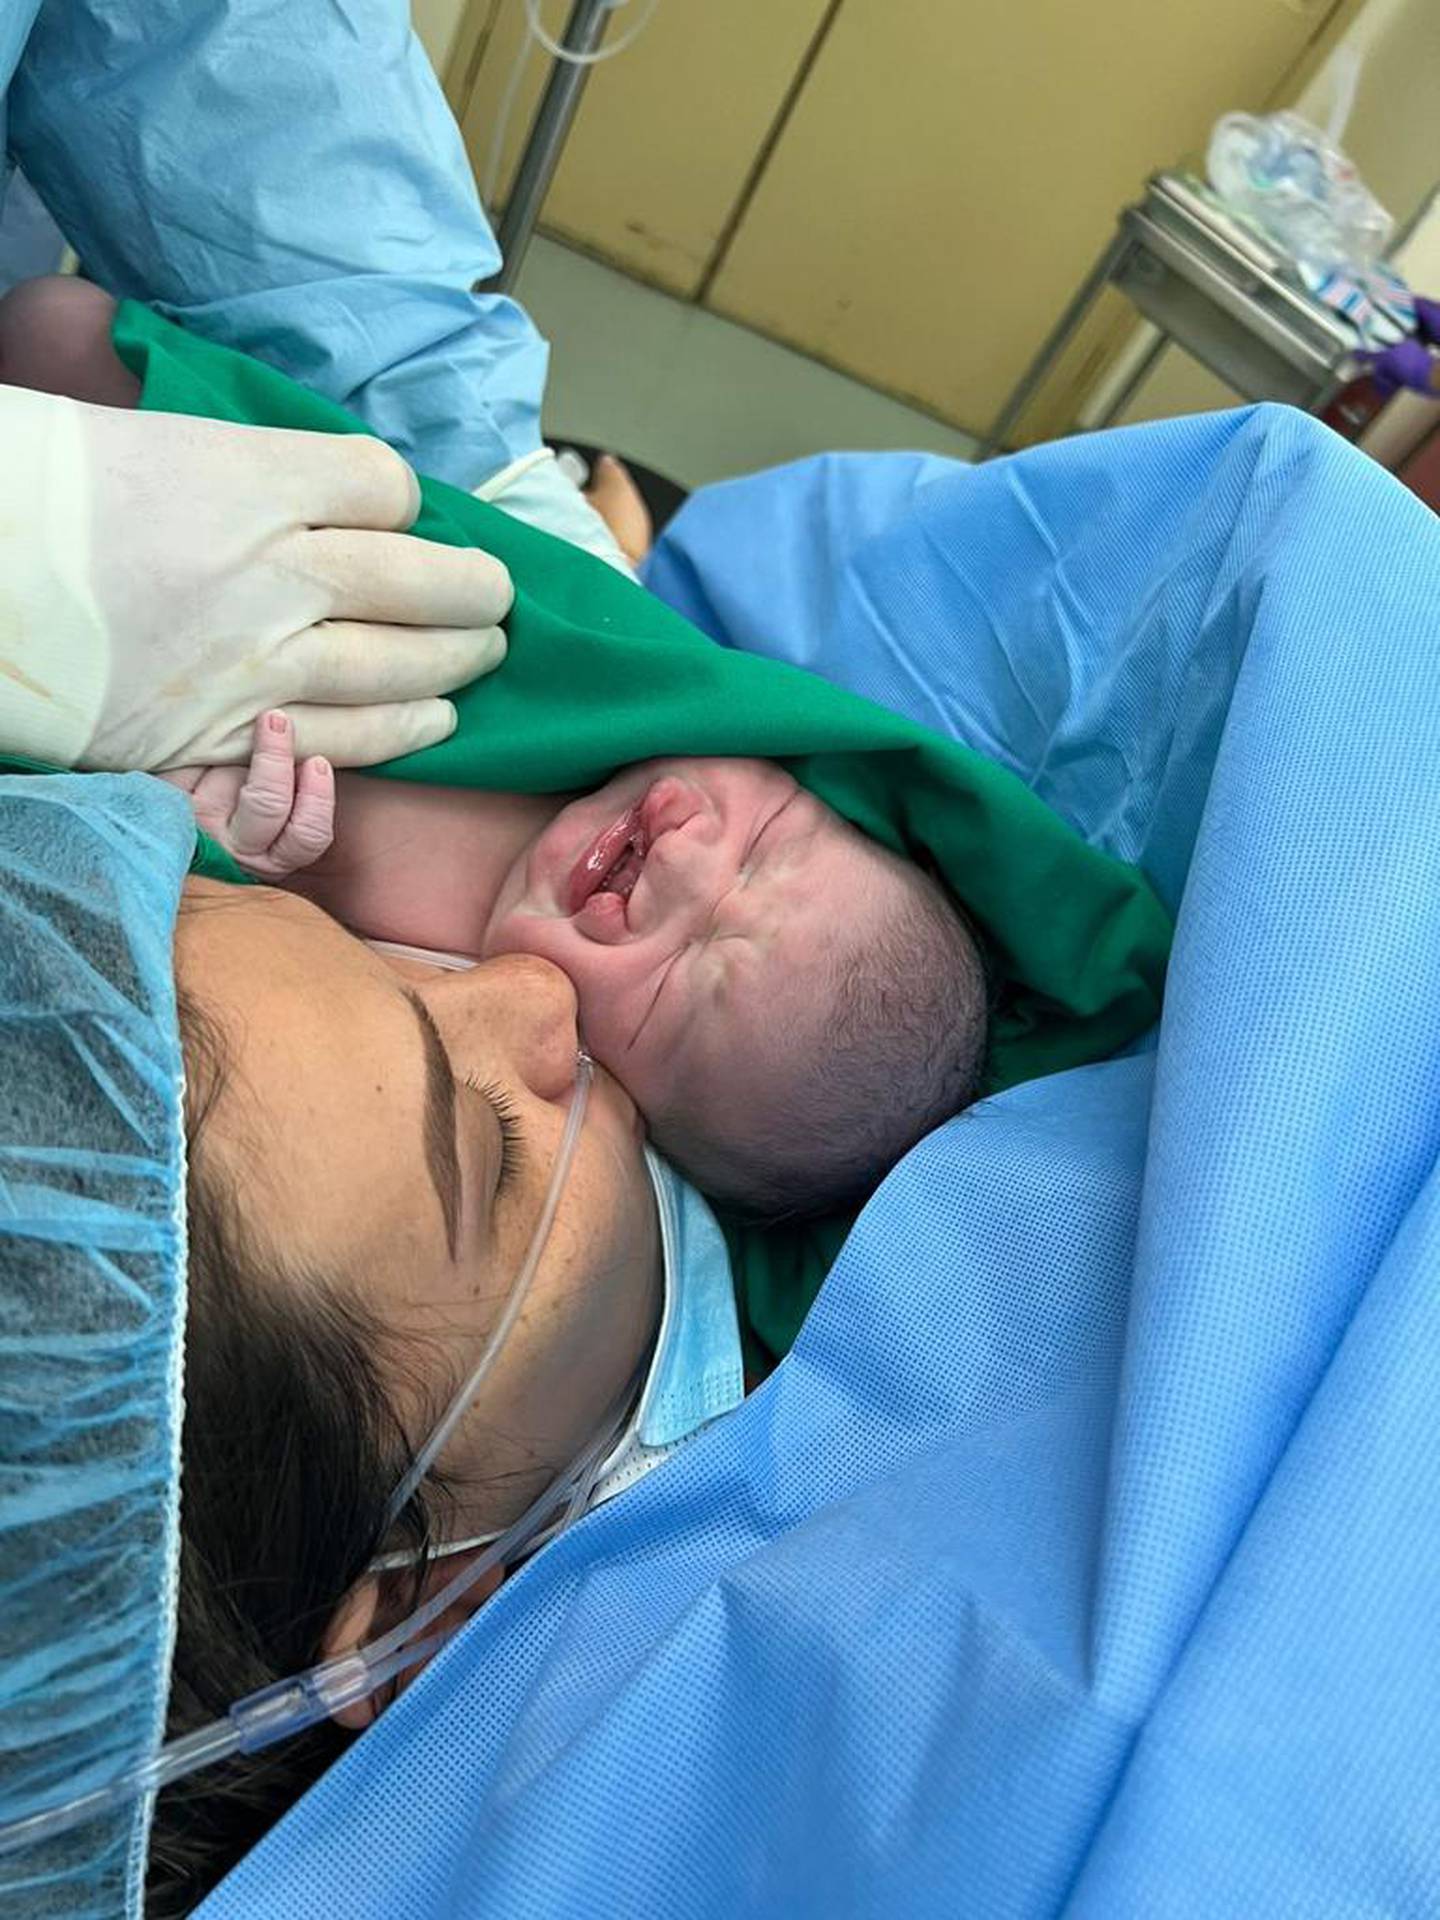 Fresh Start Regalos Quirúrgicos, organización sin fines de lucro que facilita cirugías médicas gratuitas para niños, inició operaciones formalmente en Costa Rica